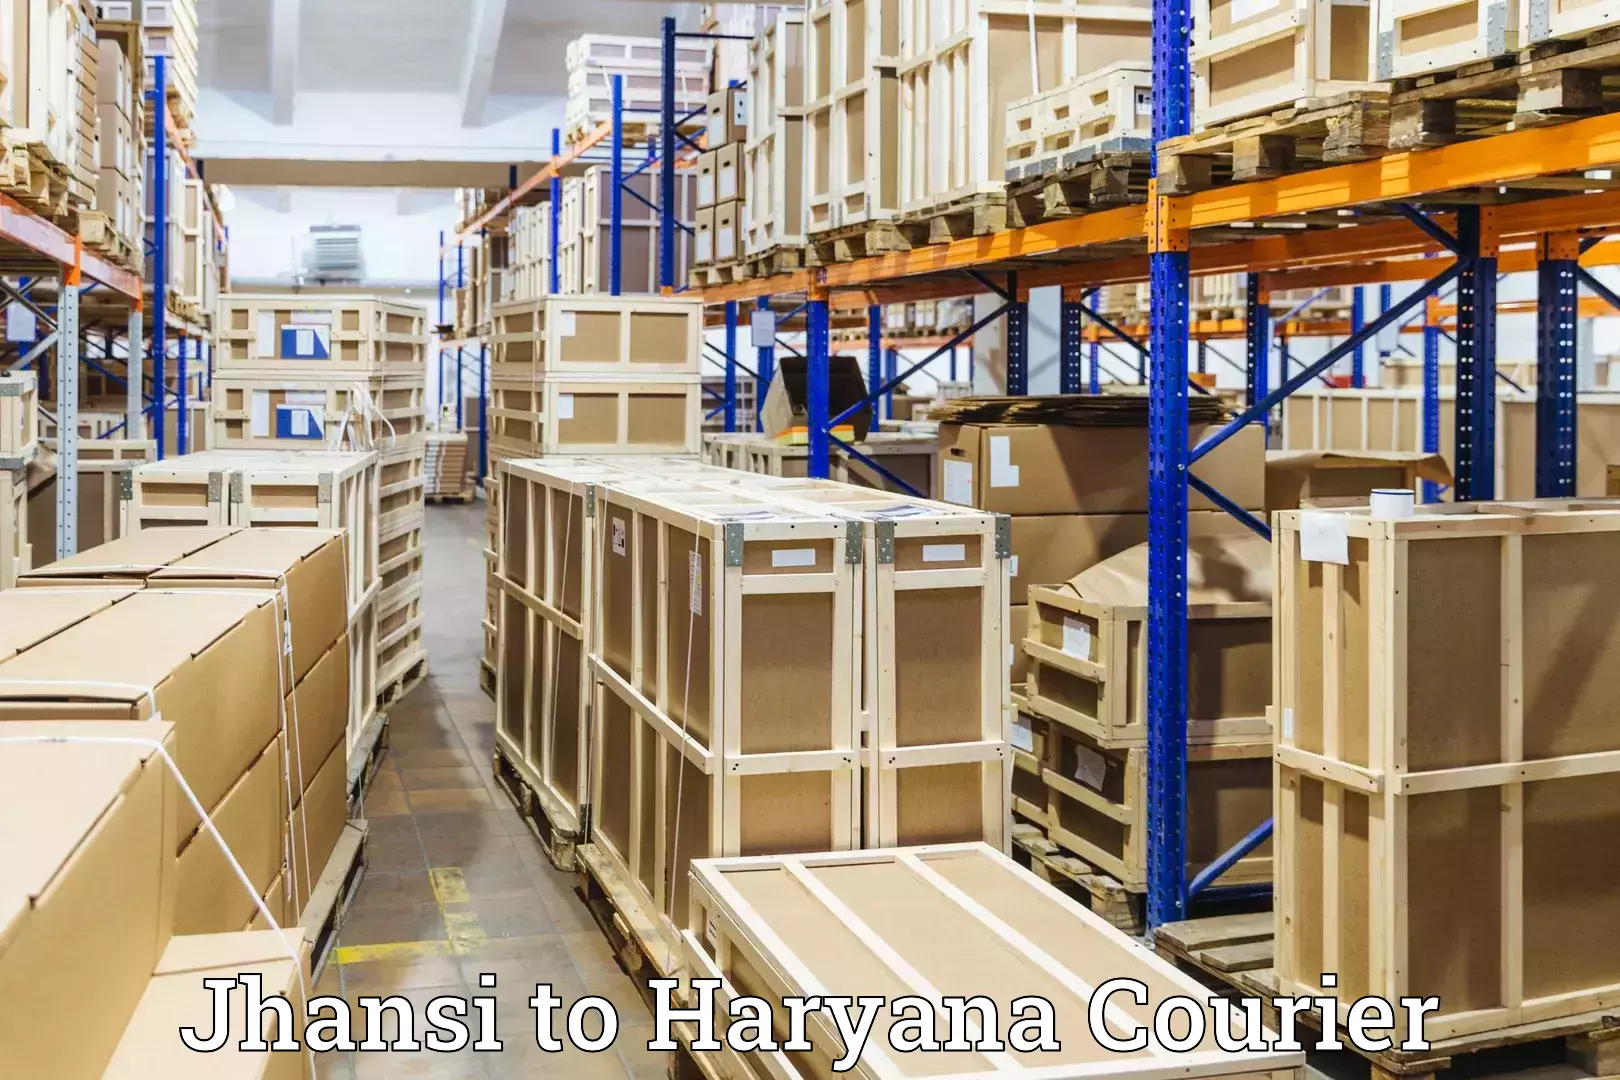 Baggage courier optimization Jhansi to Chaudhary Charan Singh Haryana Agricultural University Hisar